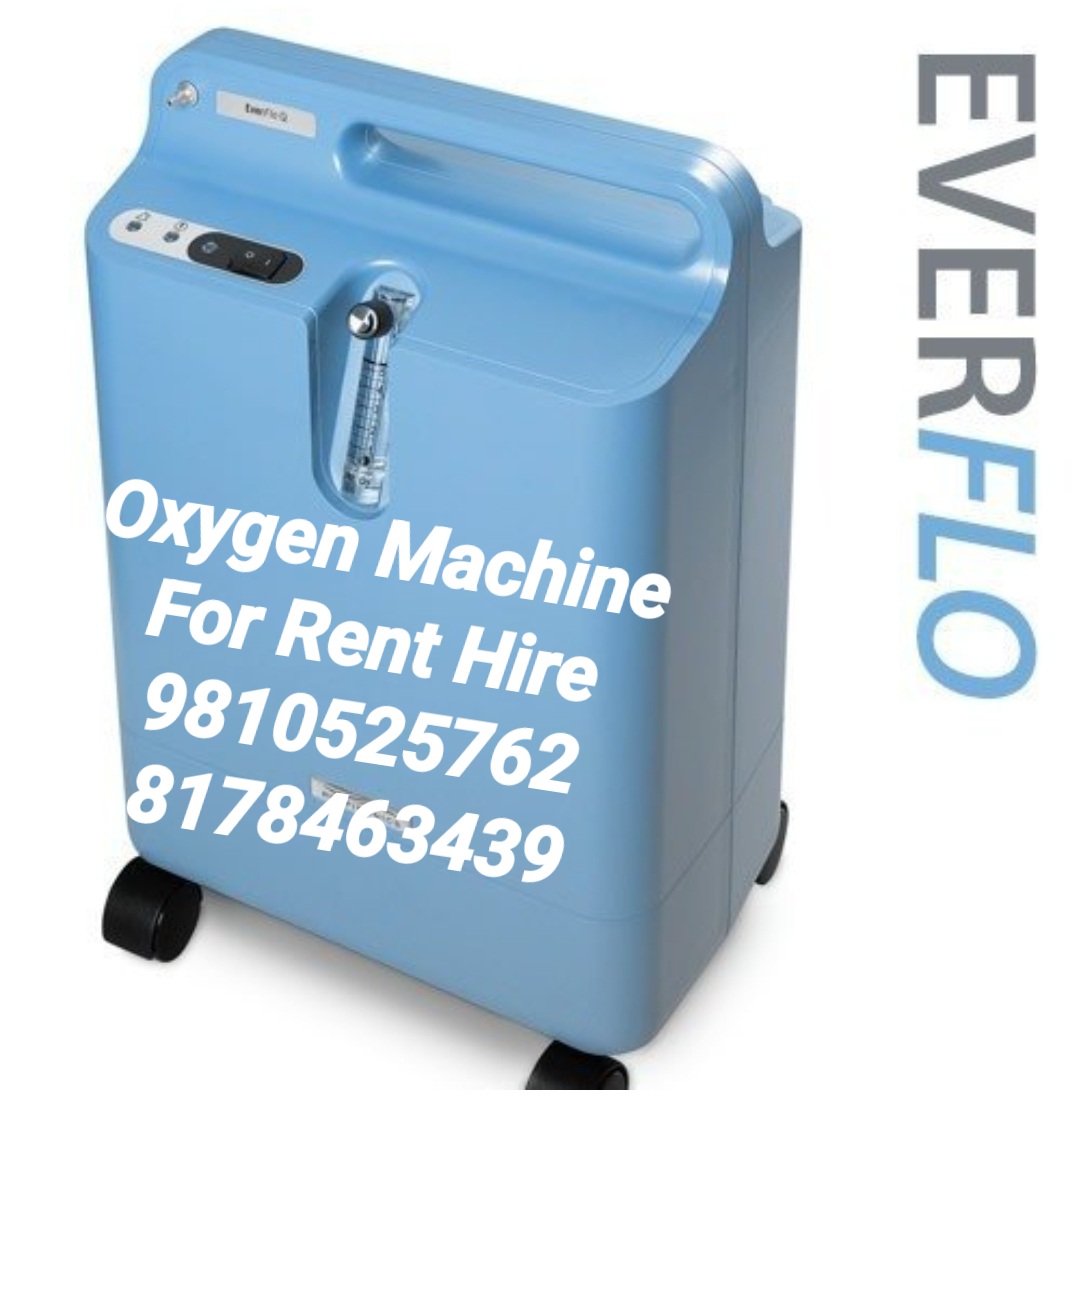 OXYGEN MACHINE SERVICE OXYGEN MACHINE REPAIR 9810525762